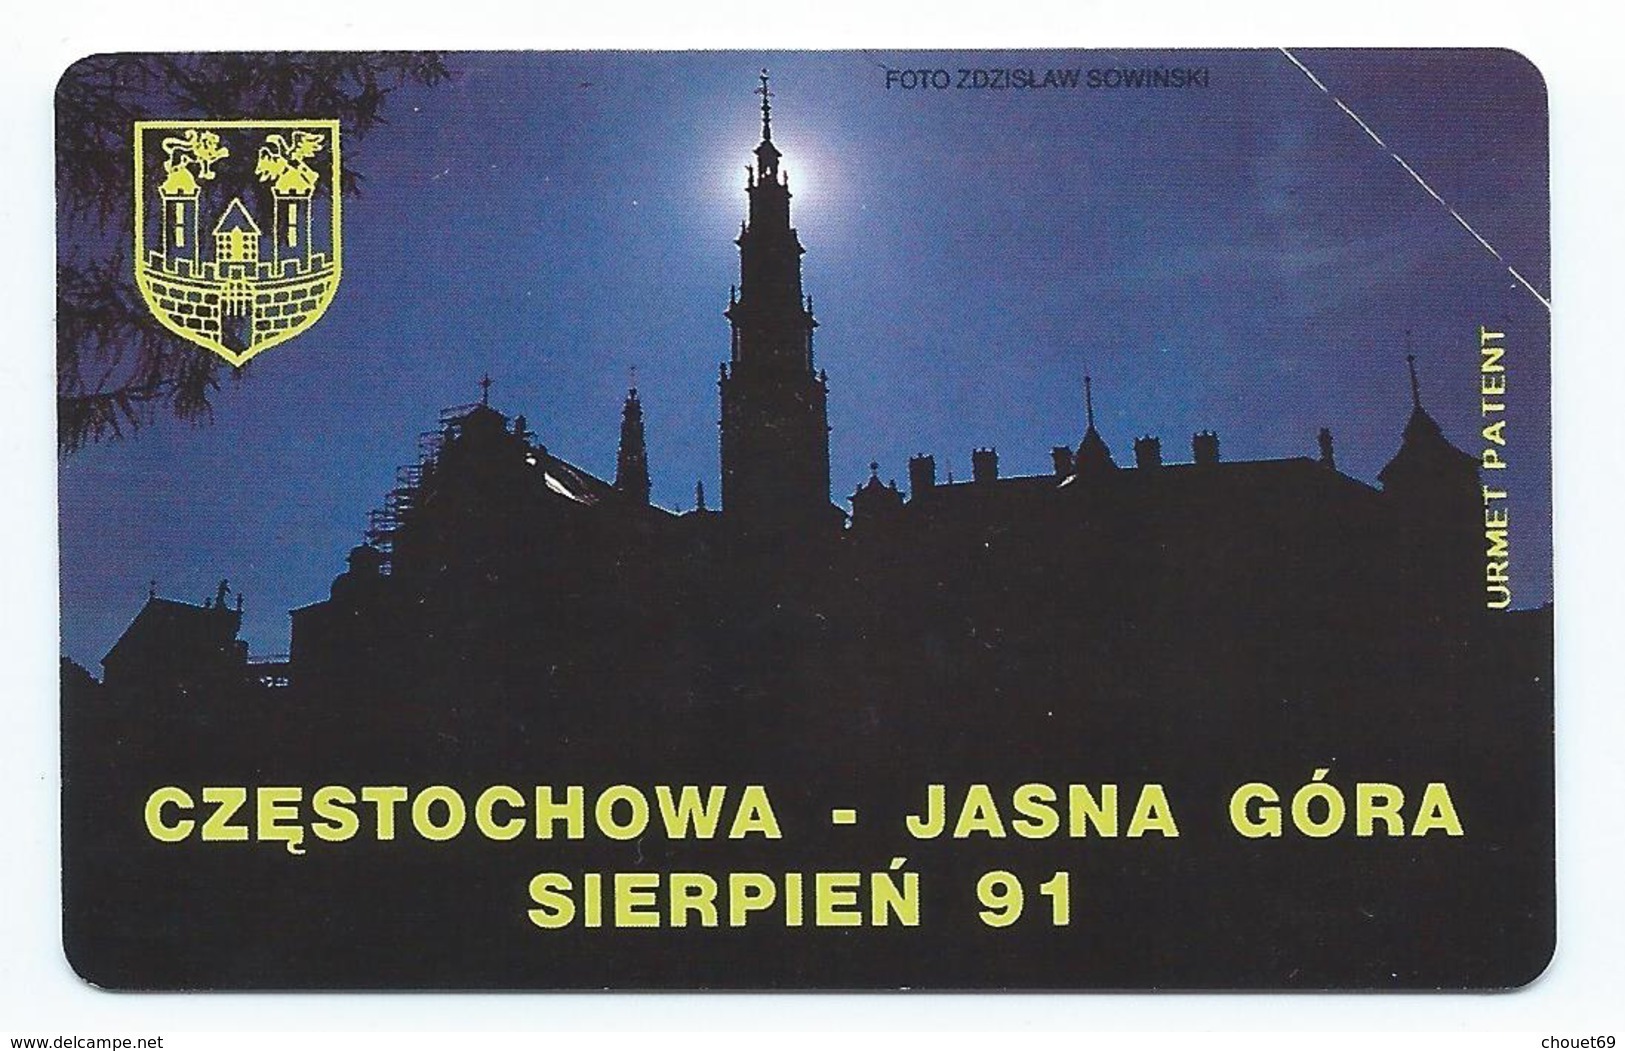 POLAND 5 - 25u CZESTOCHOWA - JASNA GORA SIERPIEN 91 1991 MINT NEUVE POLAND URMET - Pologne